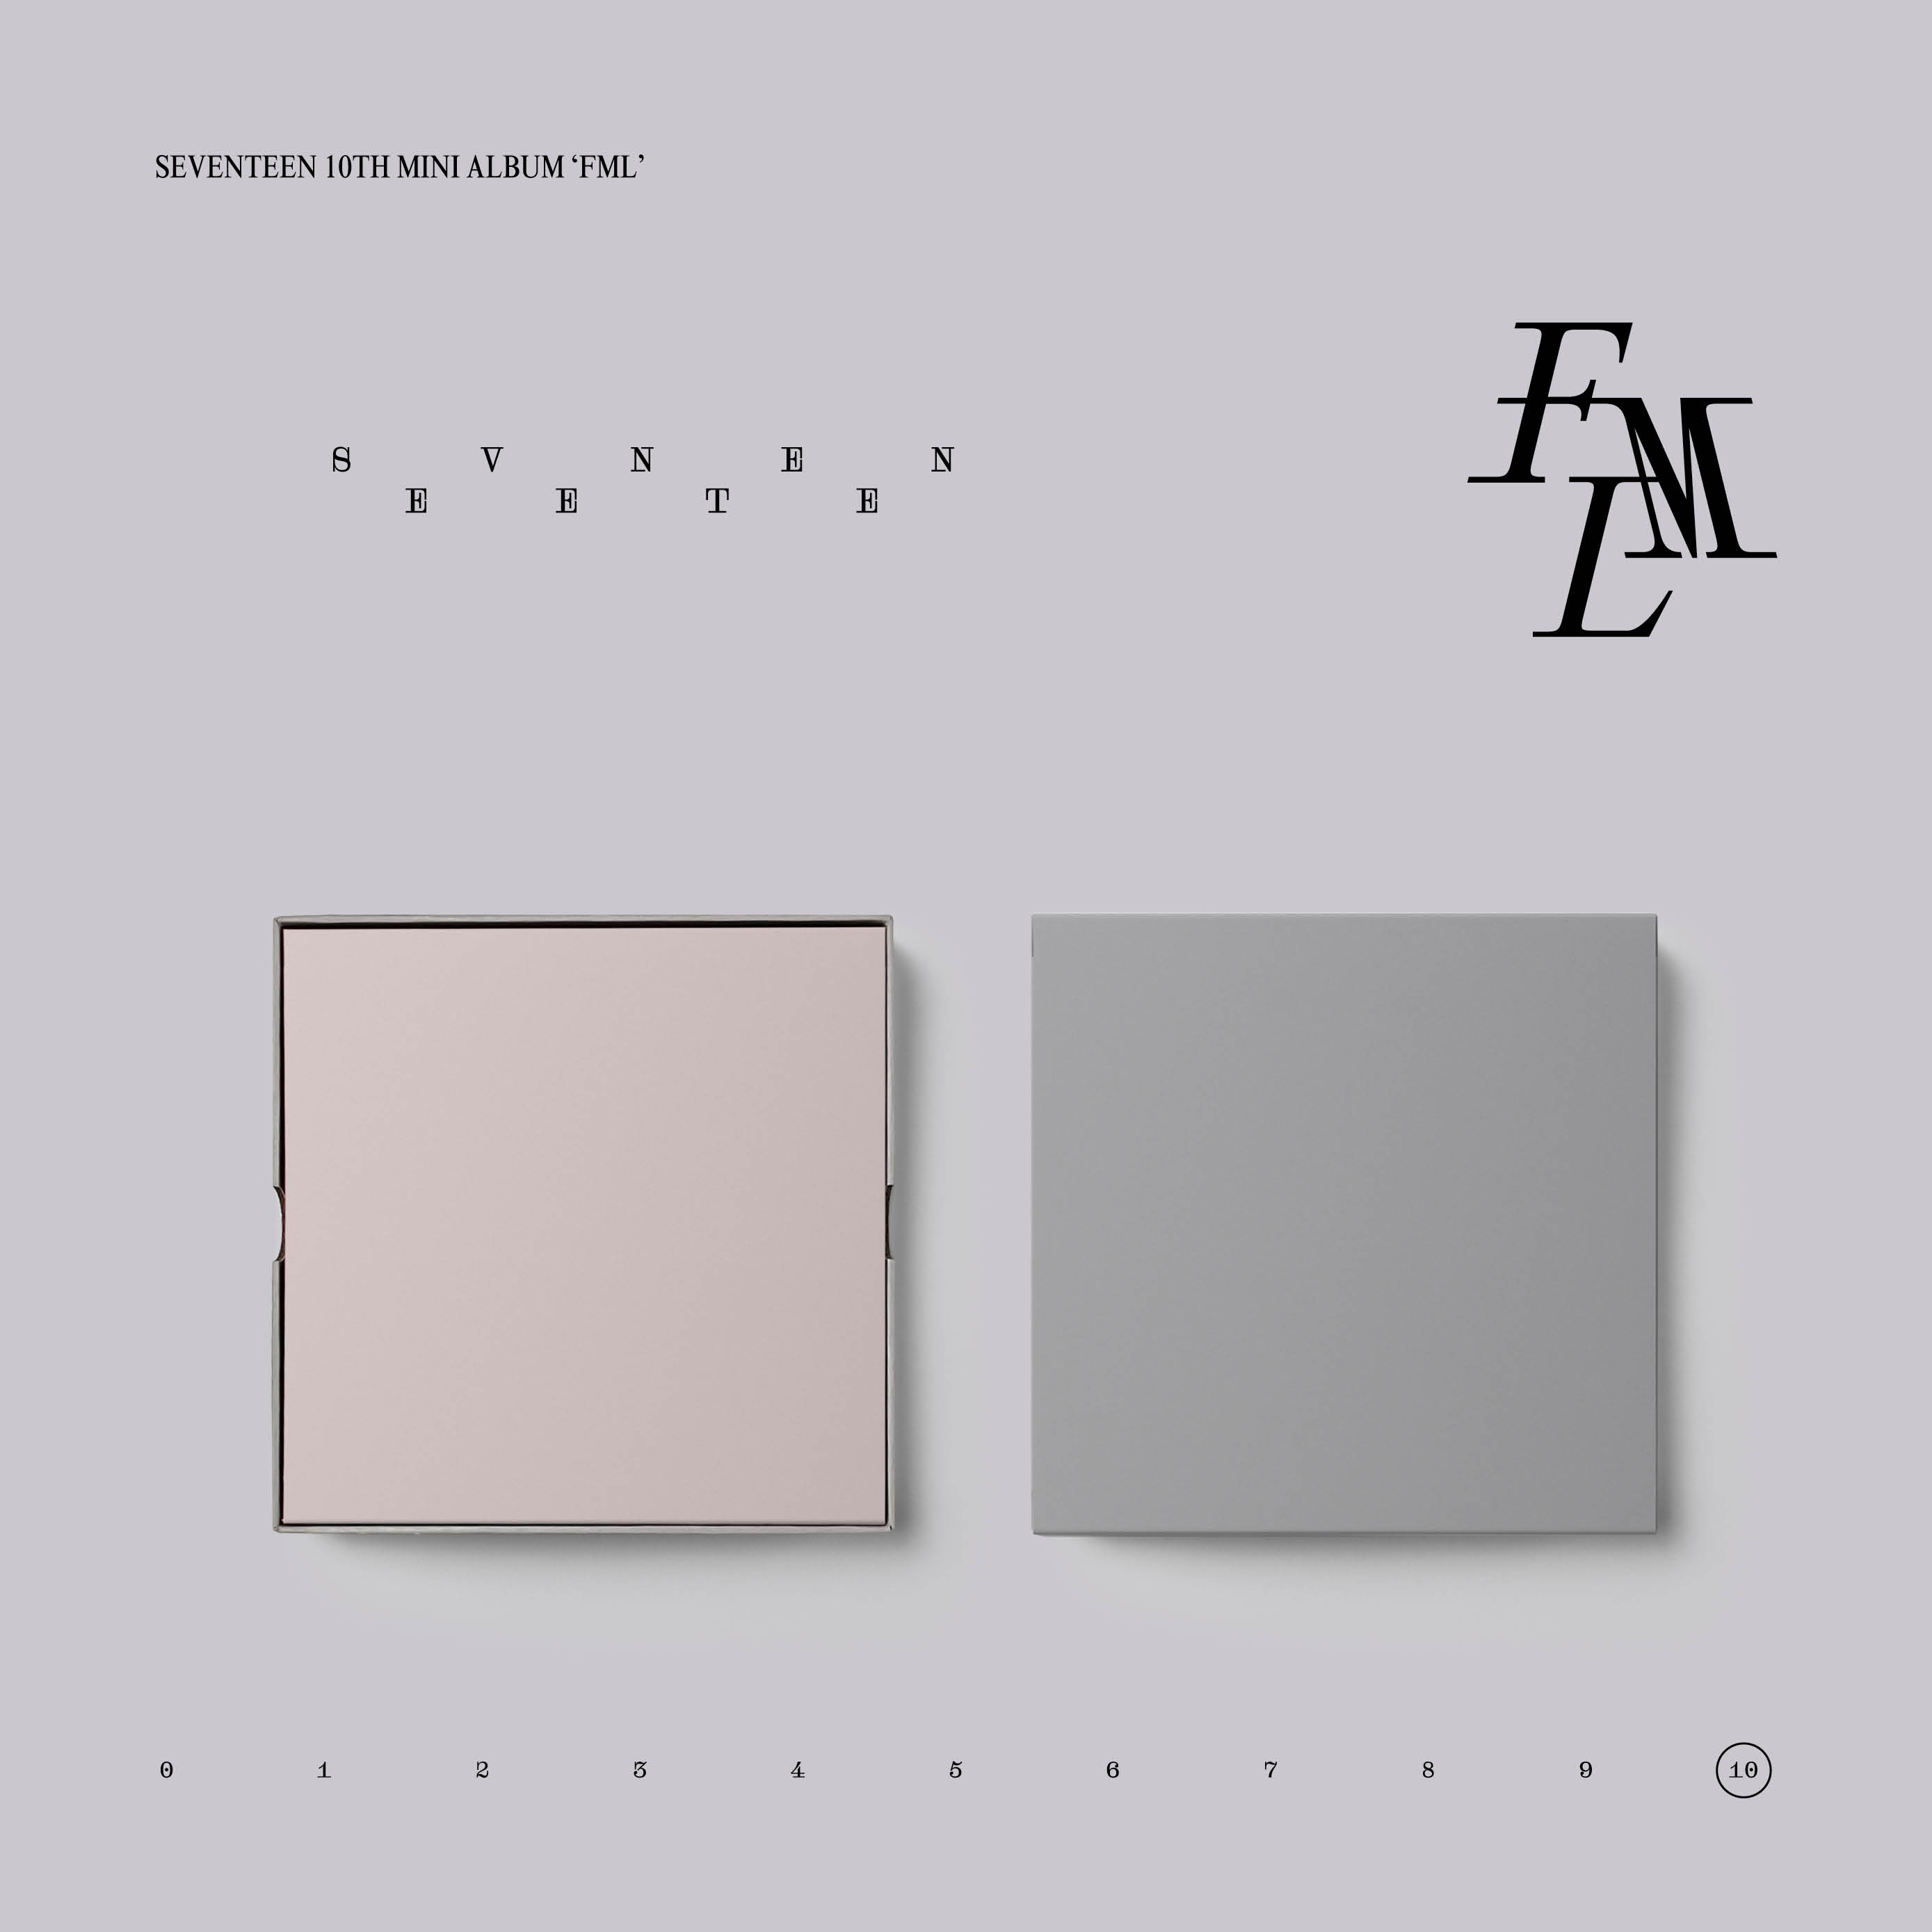 [拆卡专 有特典] SEVENTEEN - 10th Mini Album [FML] (CARAT Ver.)_尹净汉吧